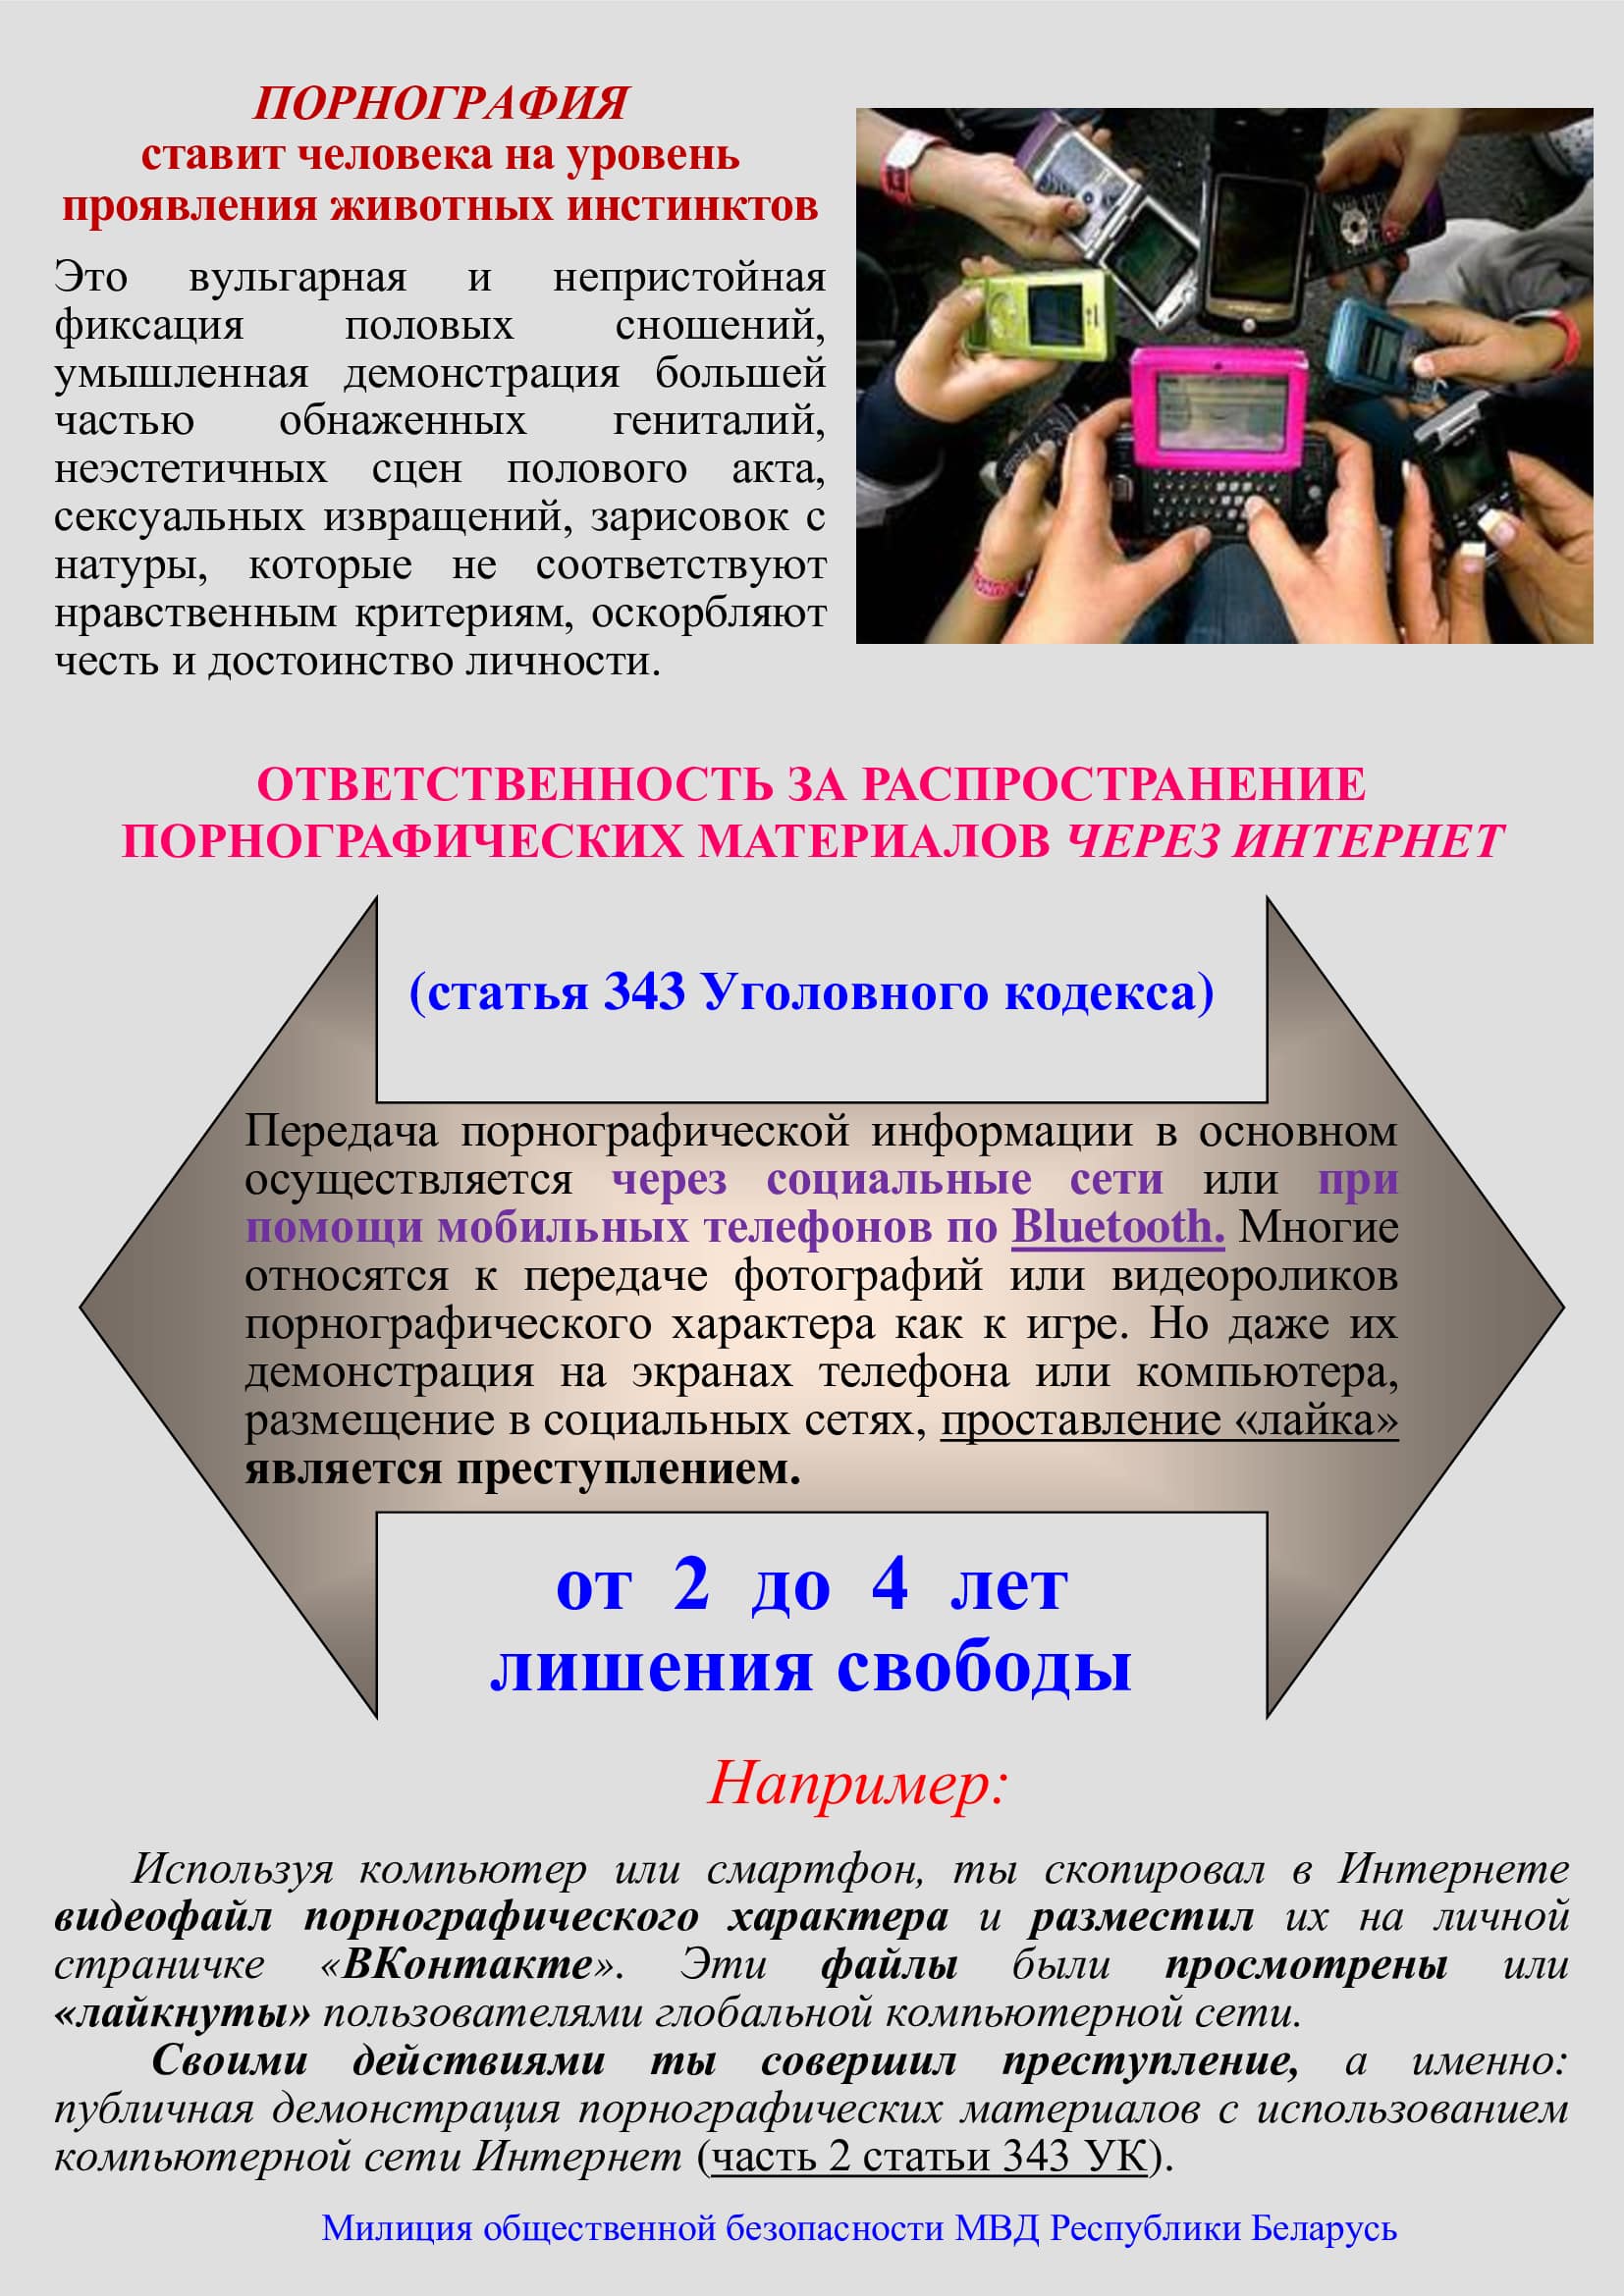 Действует ли в РФ штраф за просмотр запрещенных сайтов